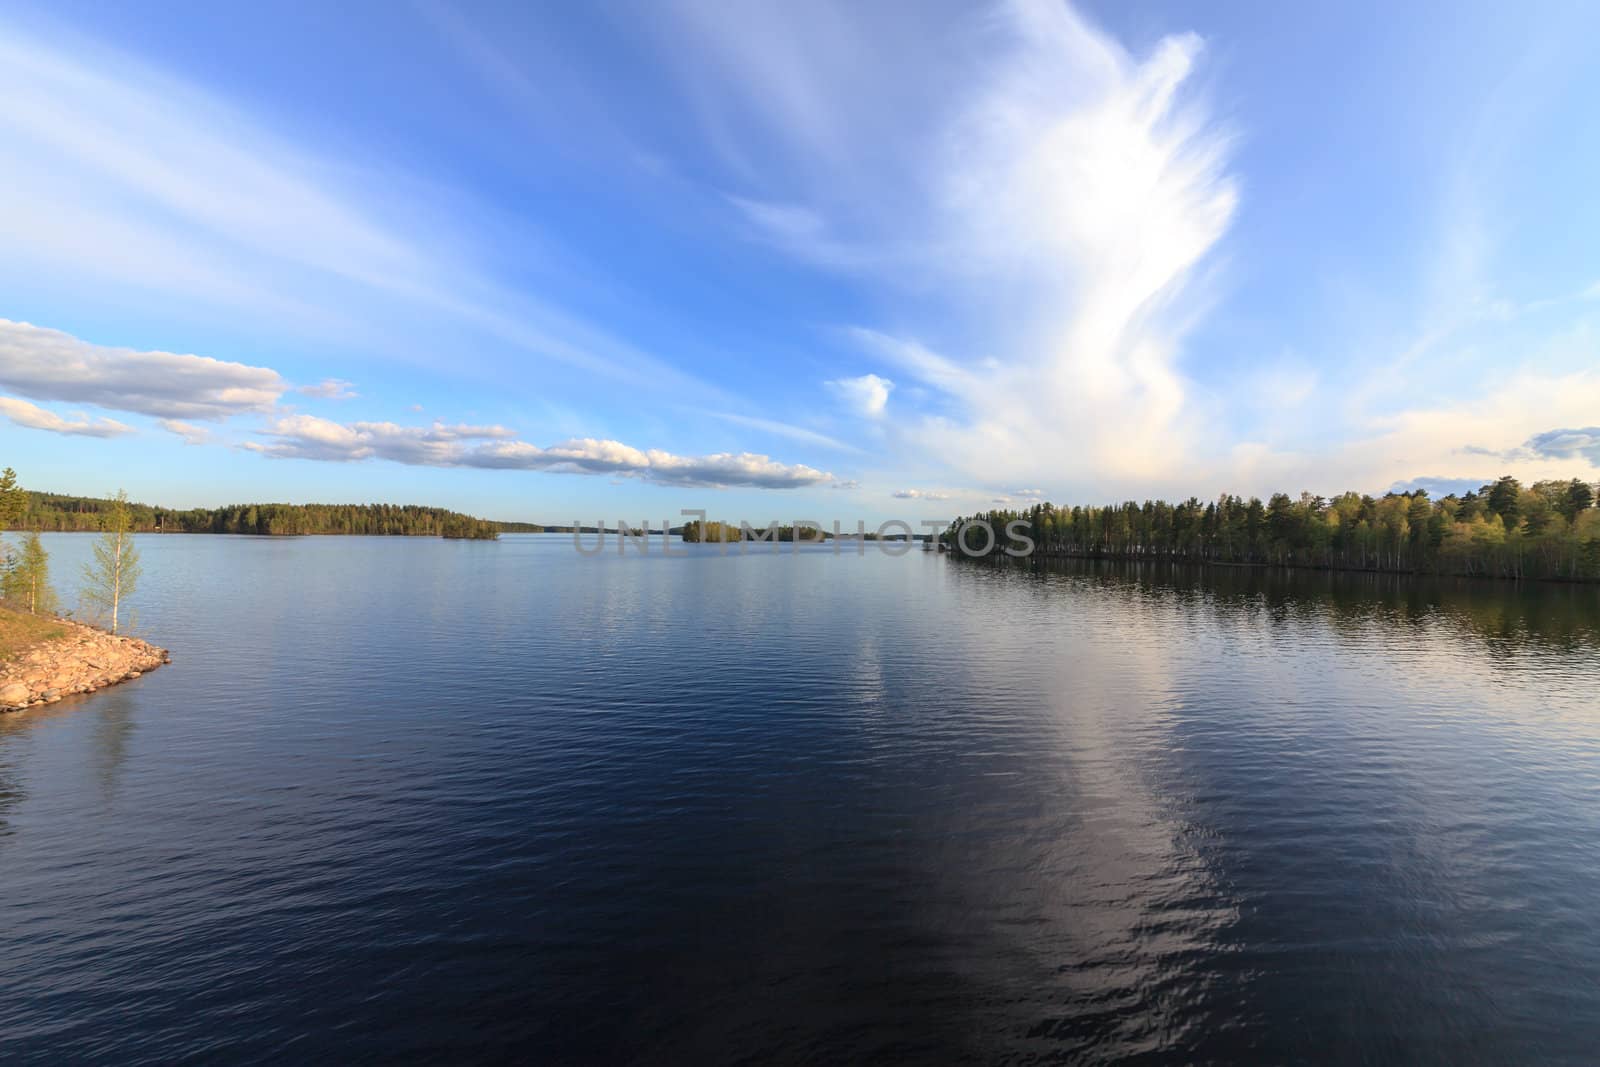 Blue Lake and Sky, wide-angle